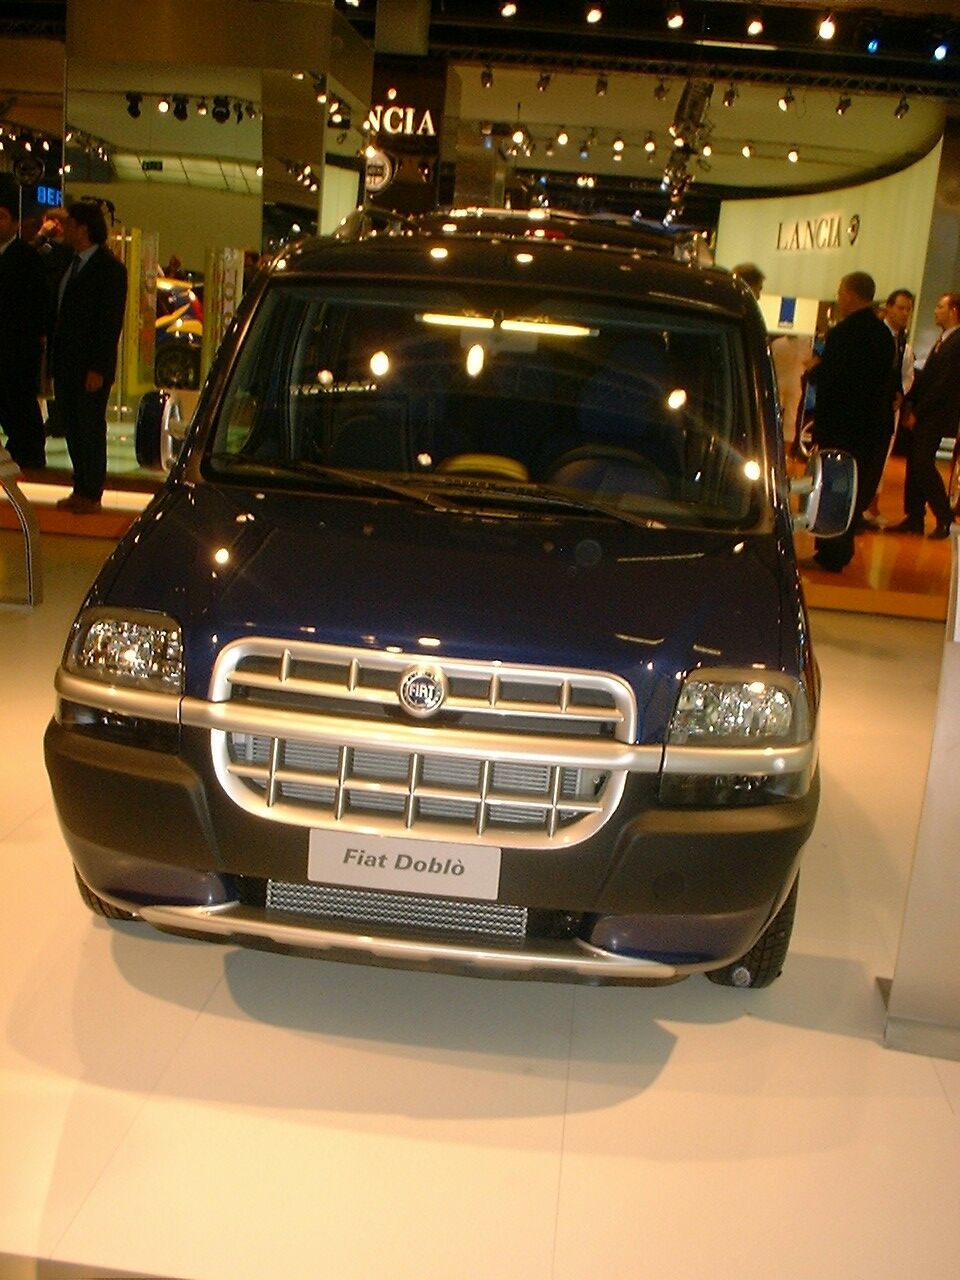 Fiat Doblo Malibu at the 2003 Frankfurt IAA